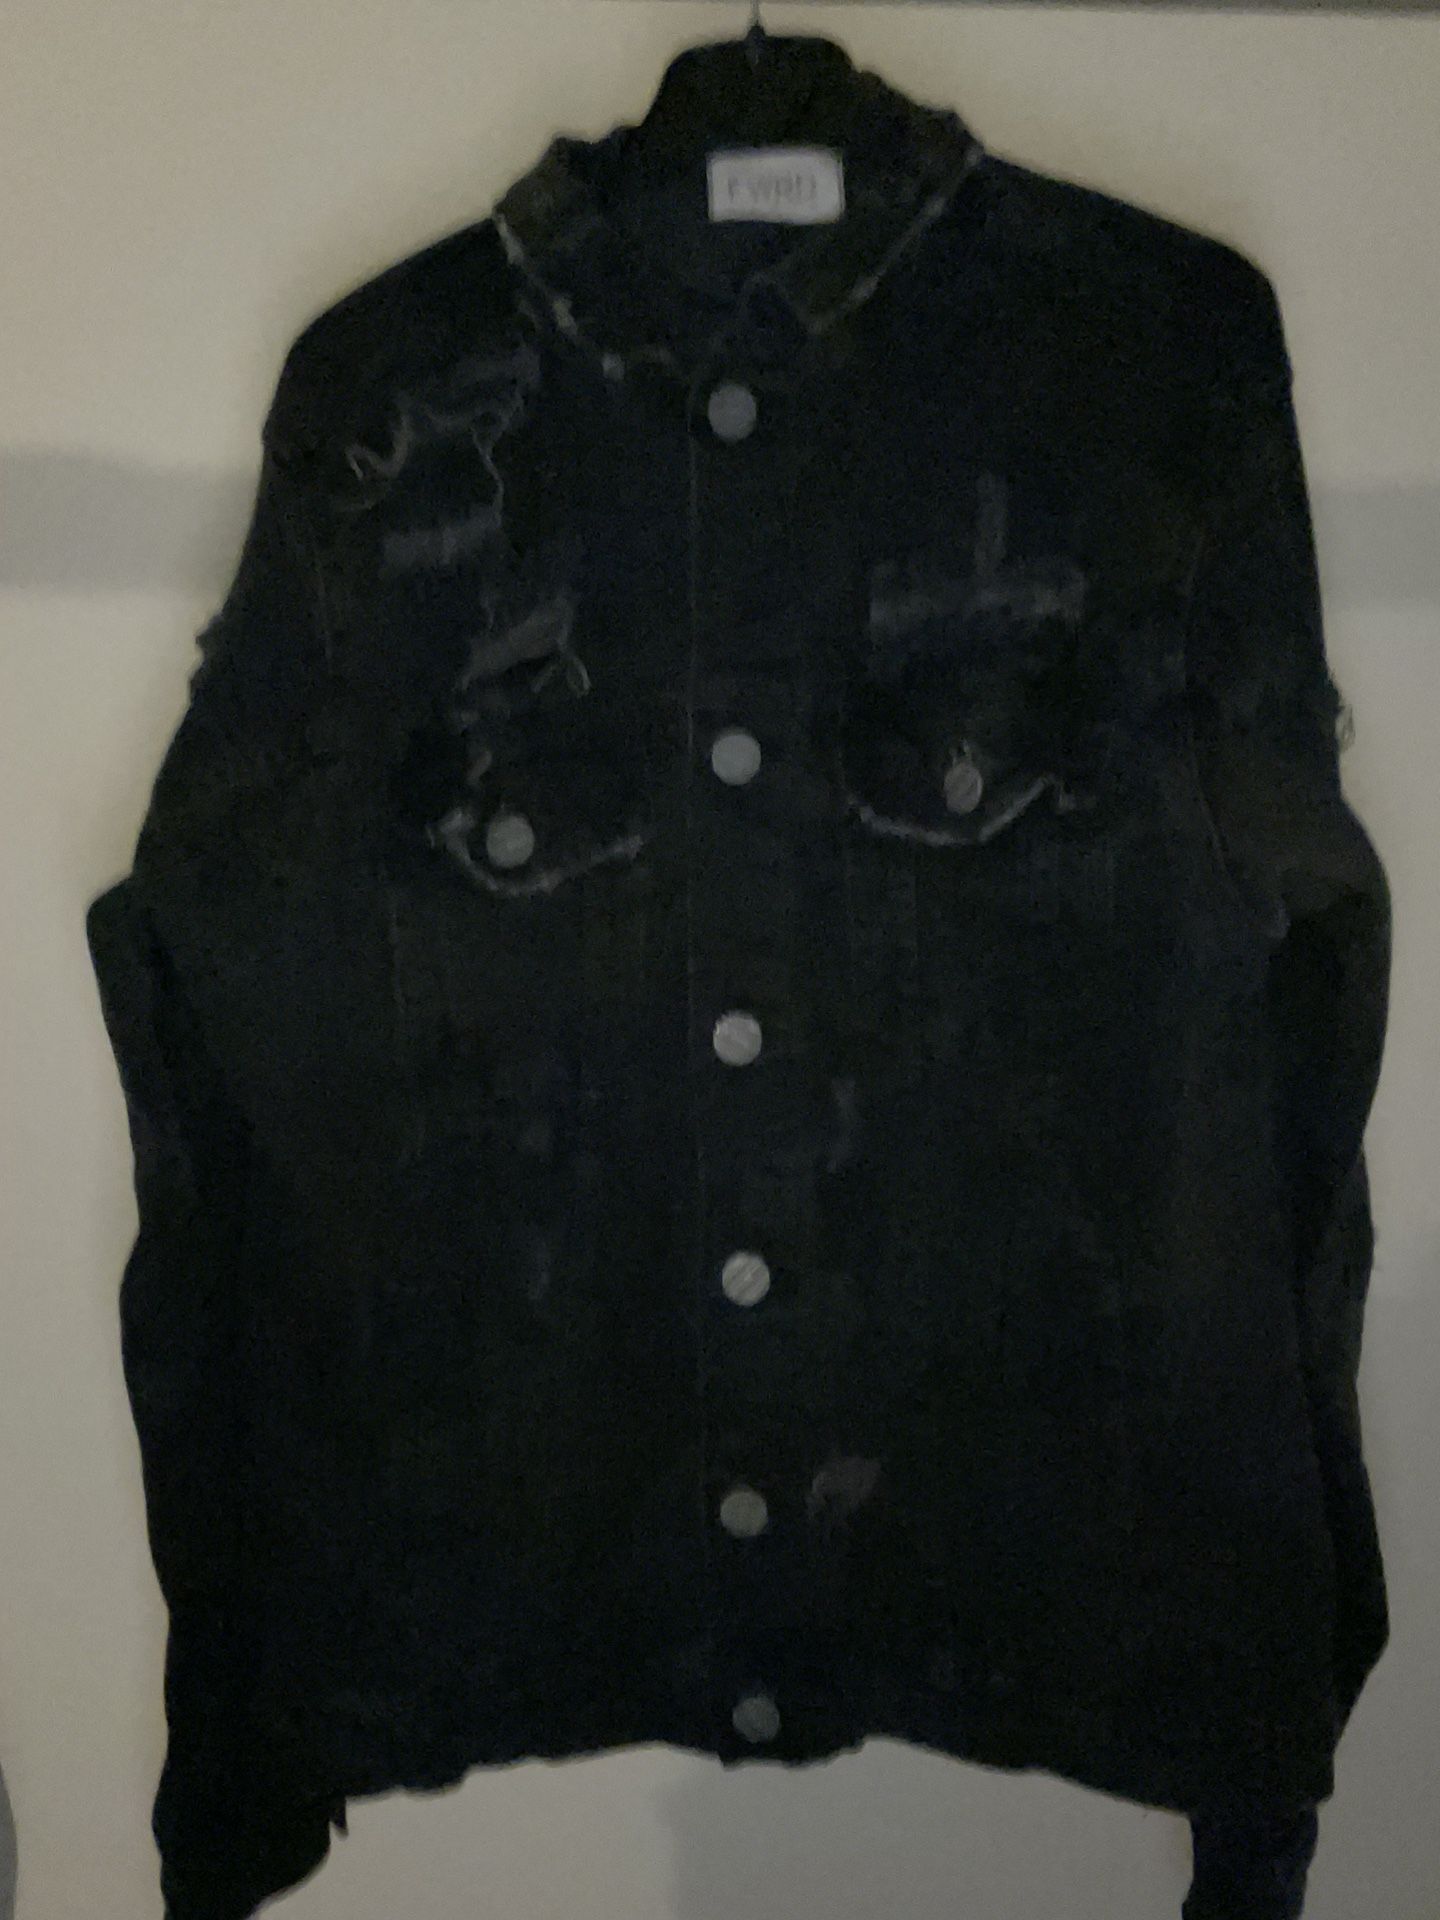 Black Jean Jacket